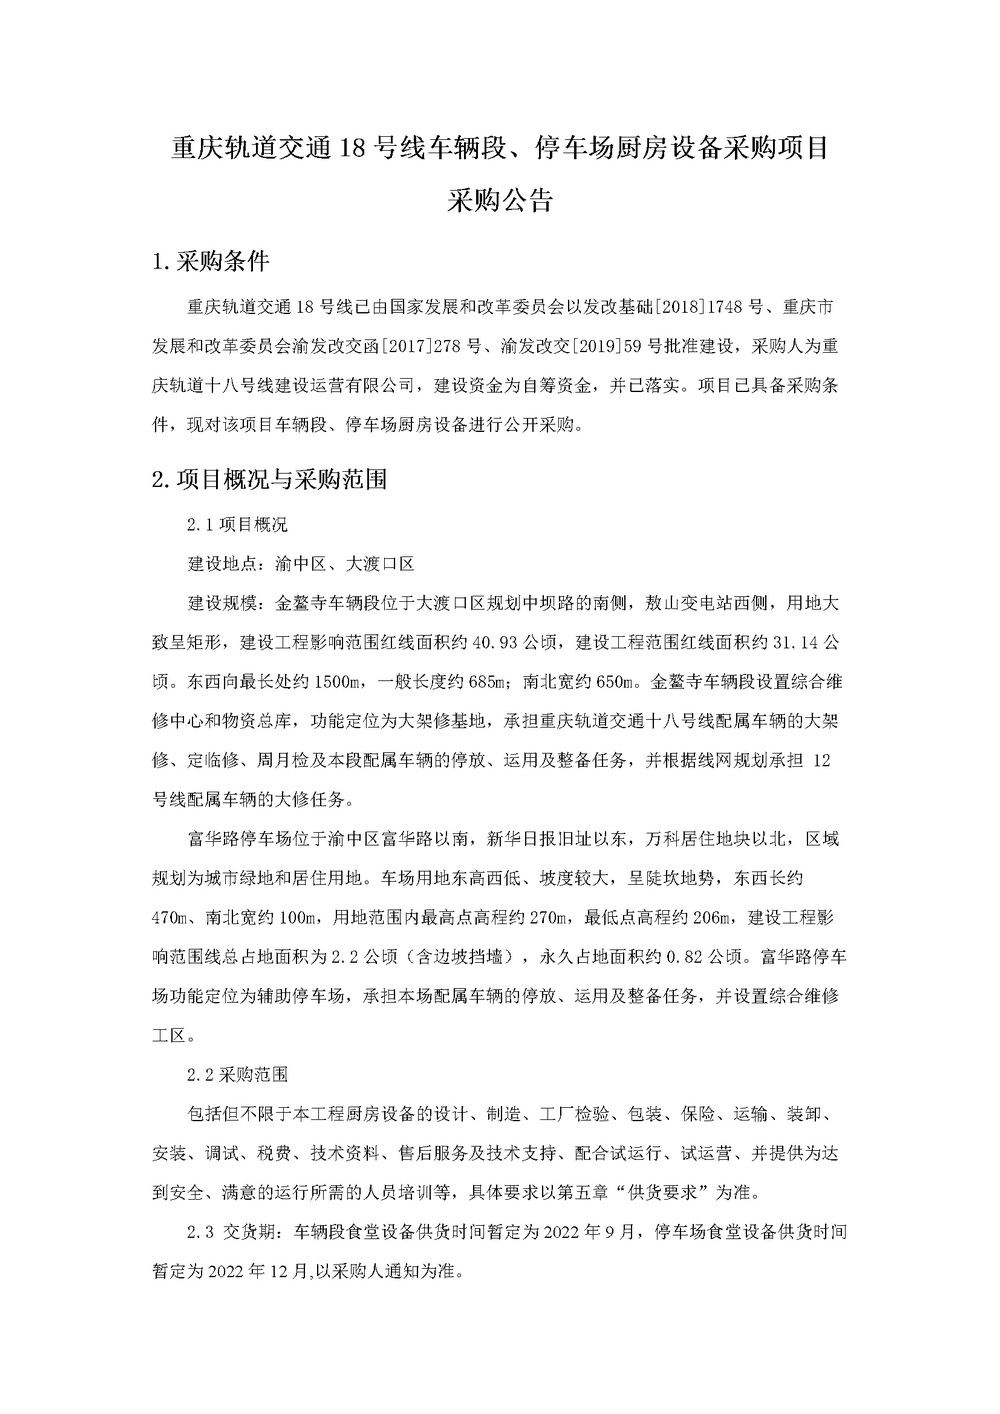 20220921重庆轨道交通18号线车辆段-停车场厨房设备采购项目公开采购公告.jpg